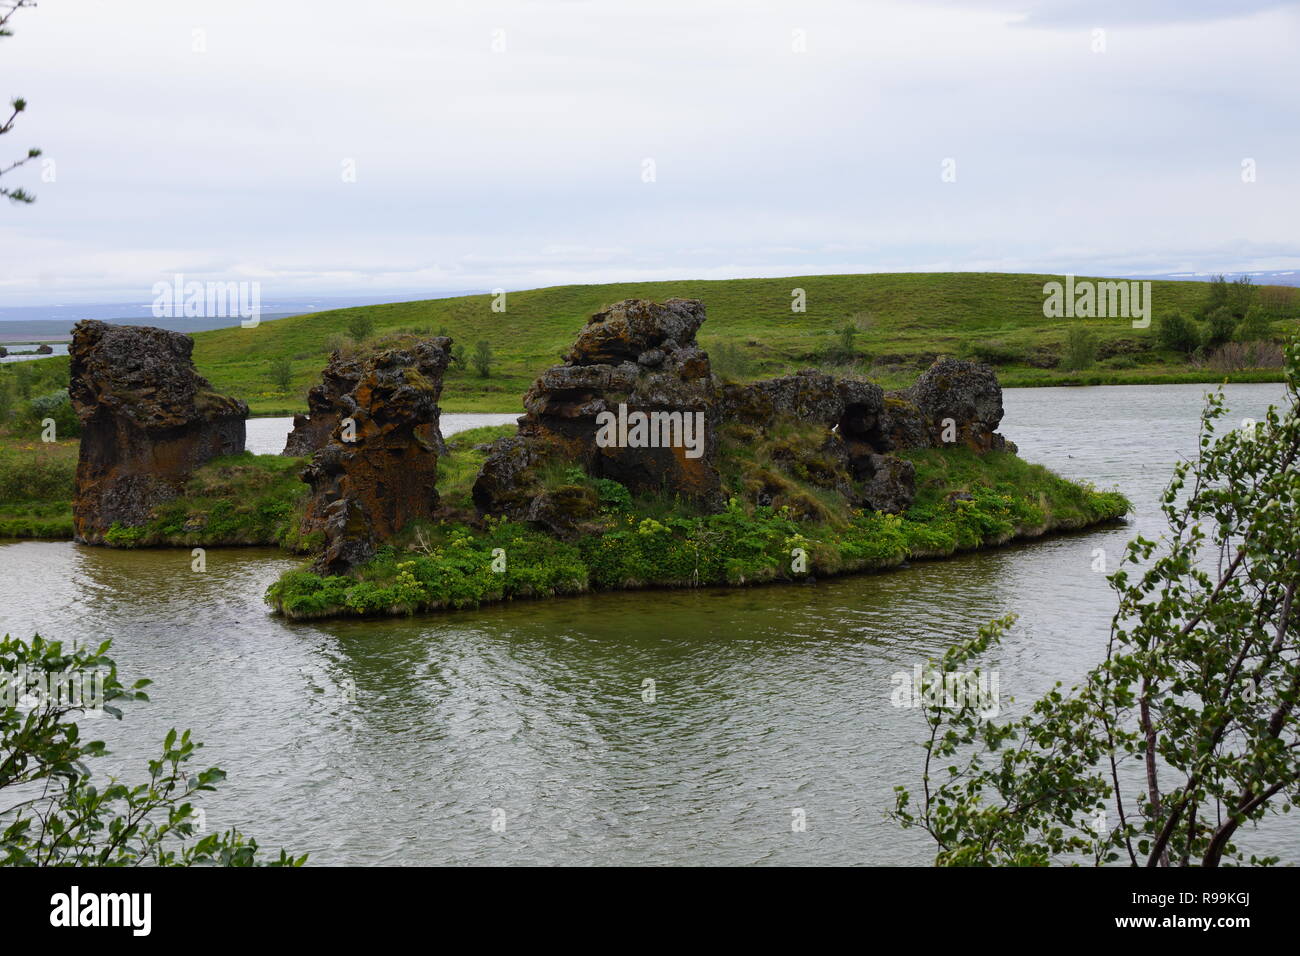 Island. Spiele der Throne region Stockfoto